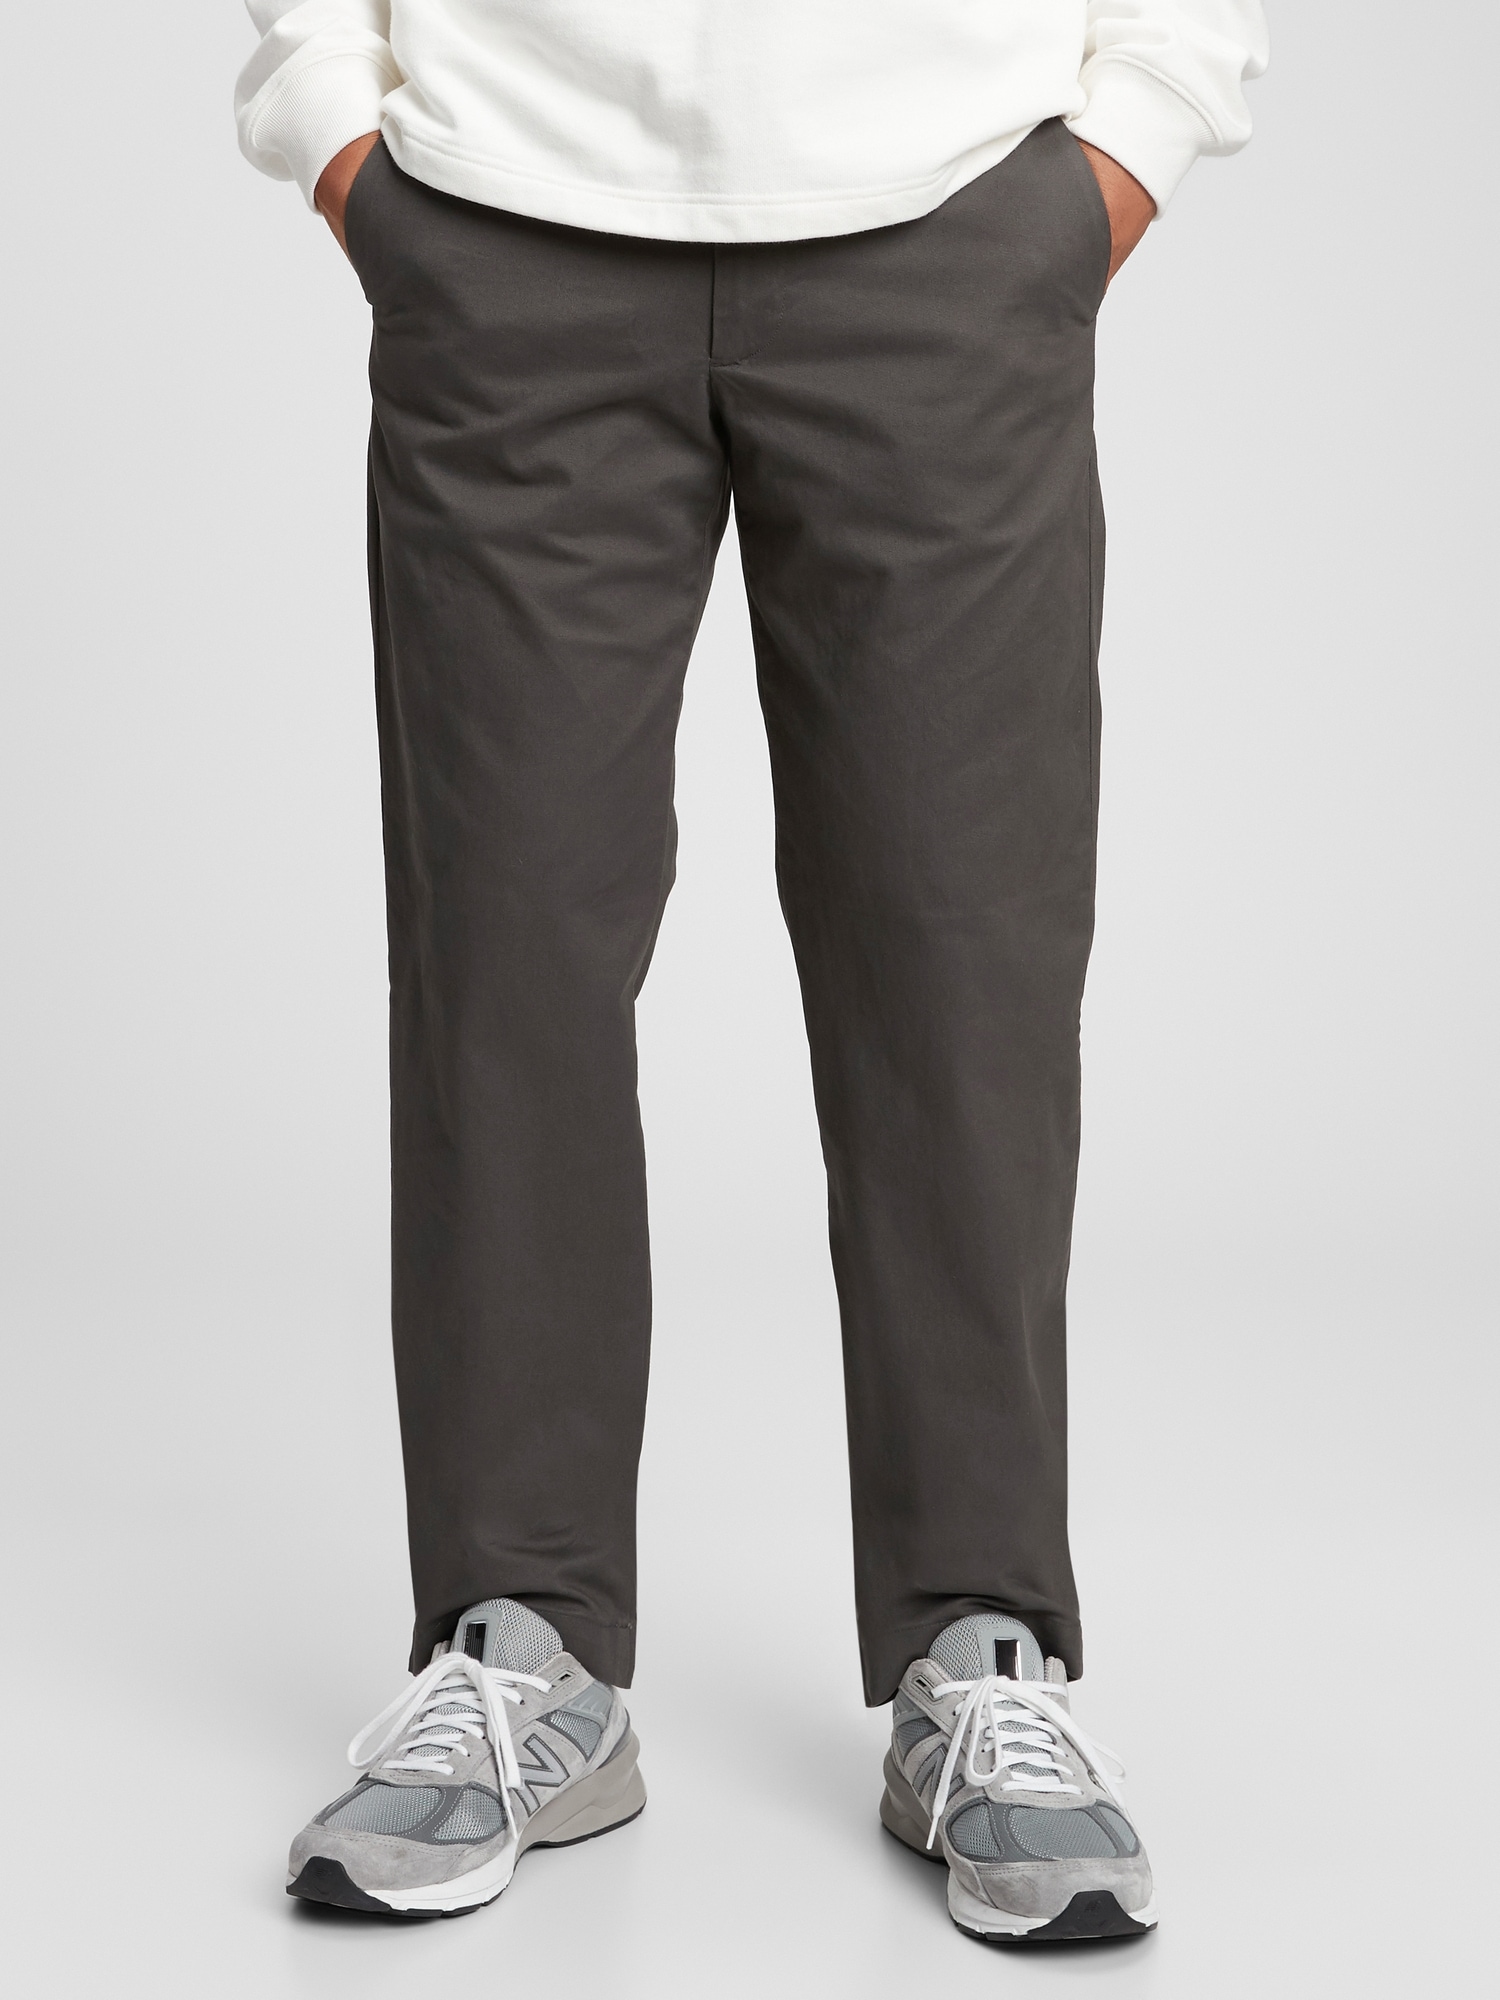 Gap Modern Khakis In Skinny Fit With Flex In Brown Noir